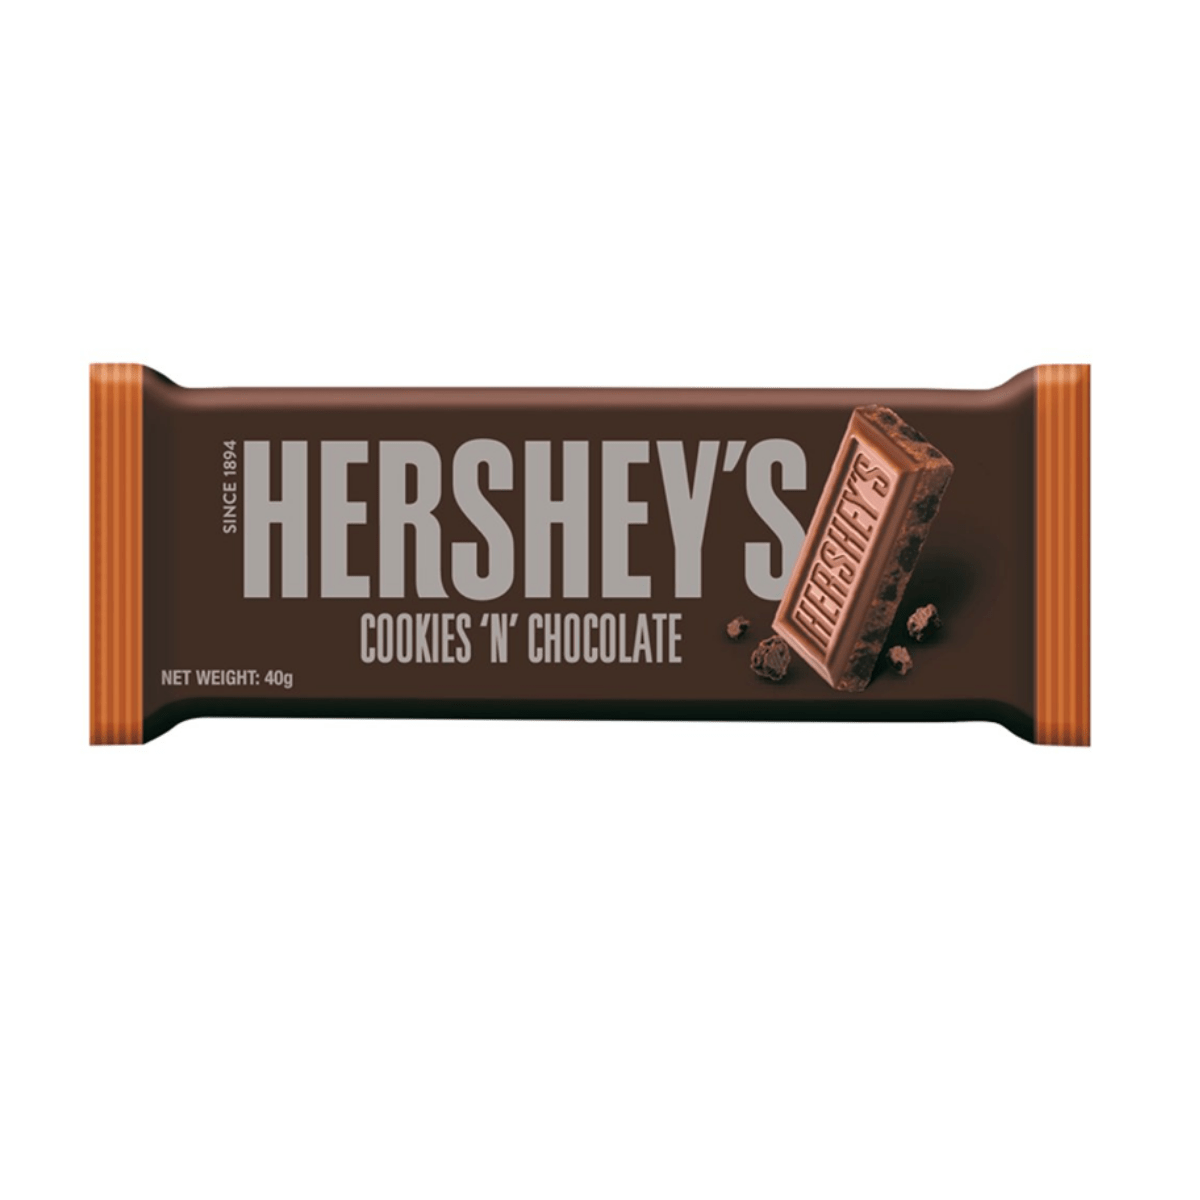 Hershey’s Cookies 'n' Chocolate 40g